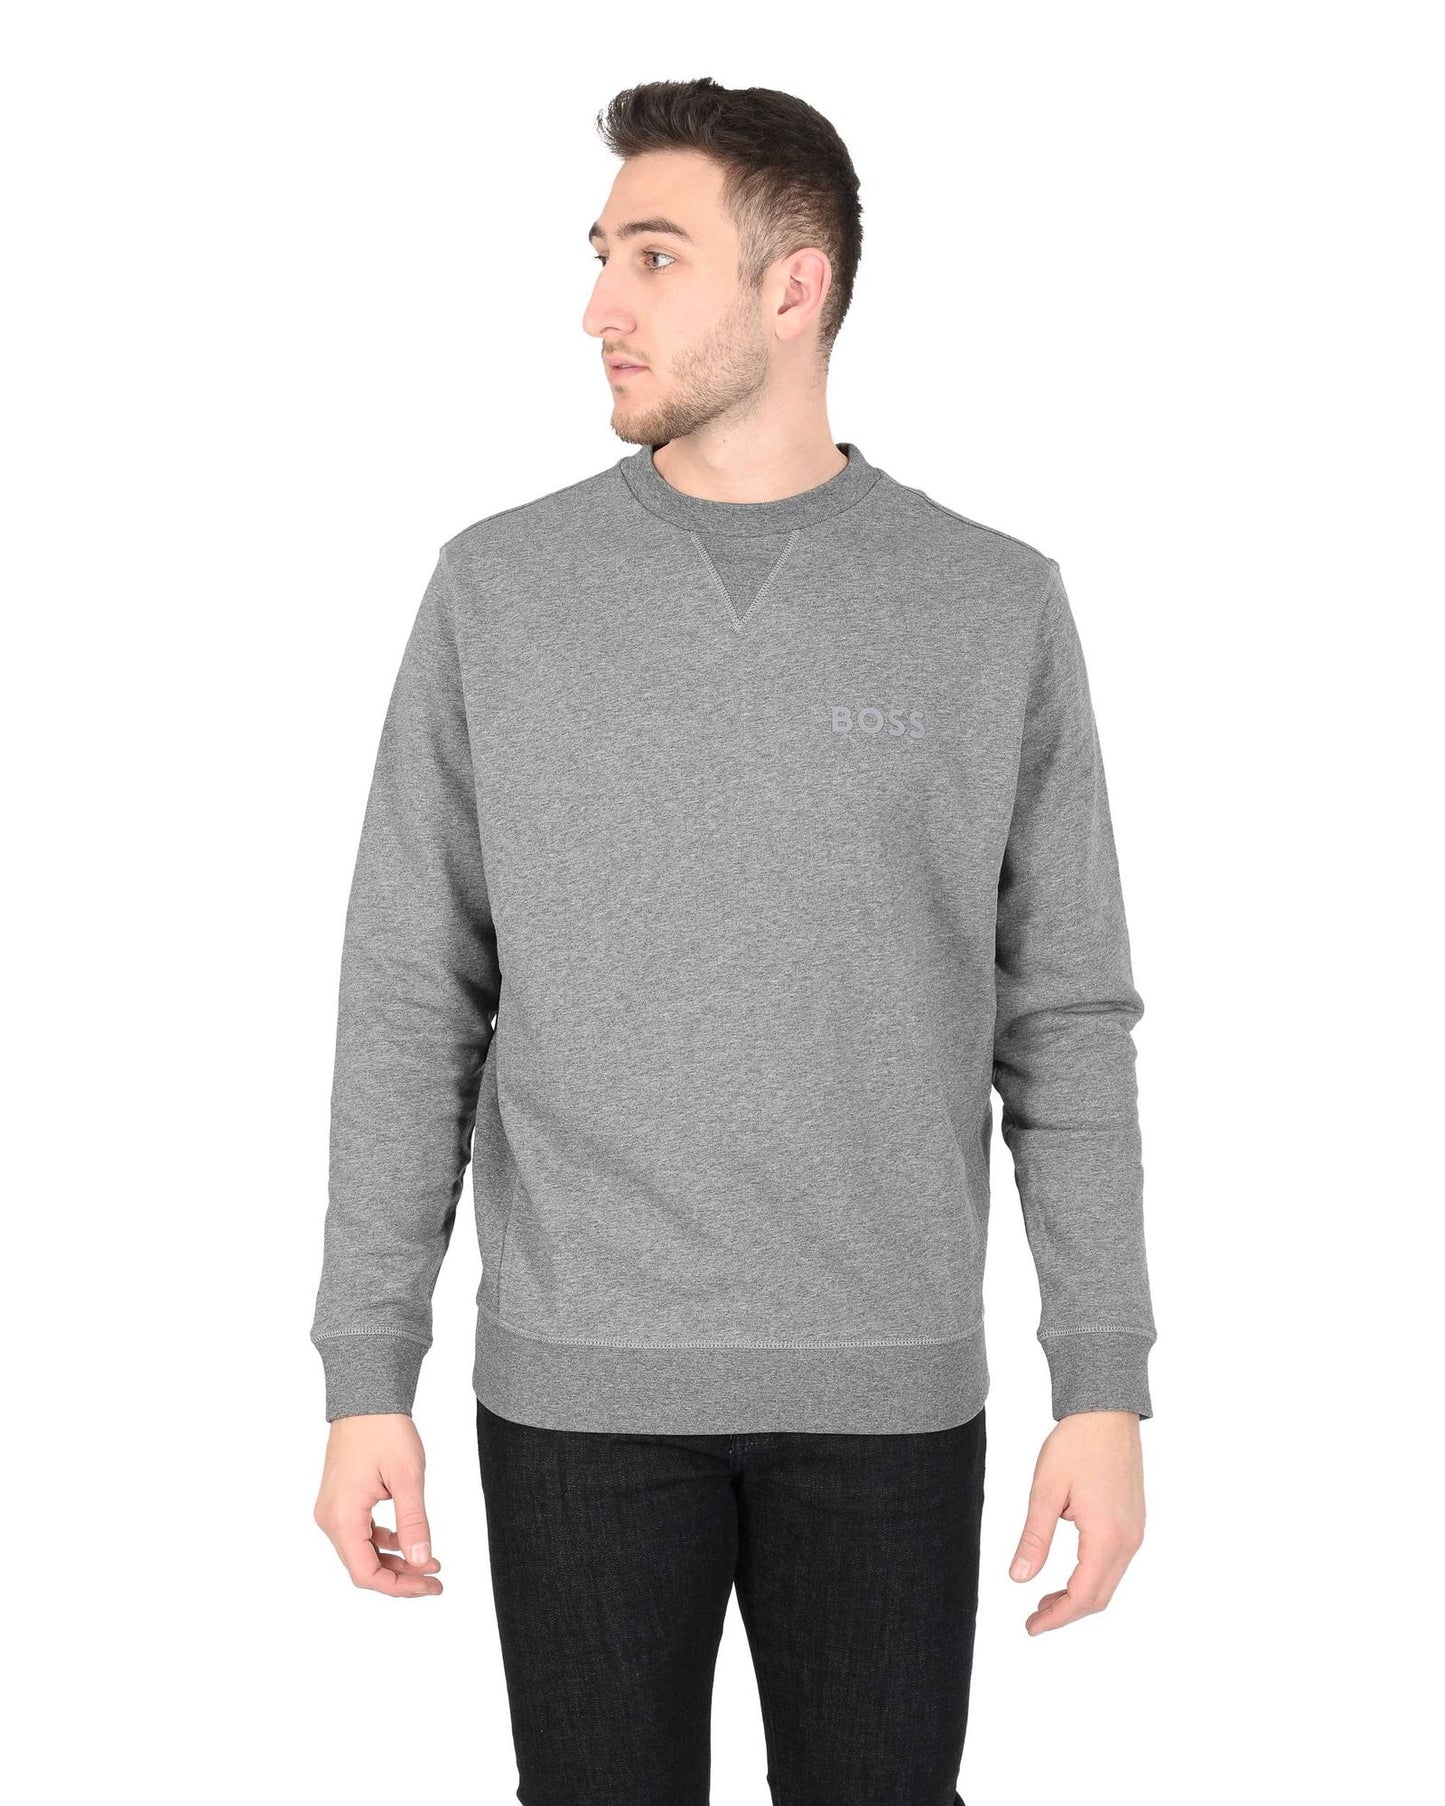 Hugo Boss Men's Grey Cotton-Polyester Sweatshirt in Grey - S